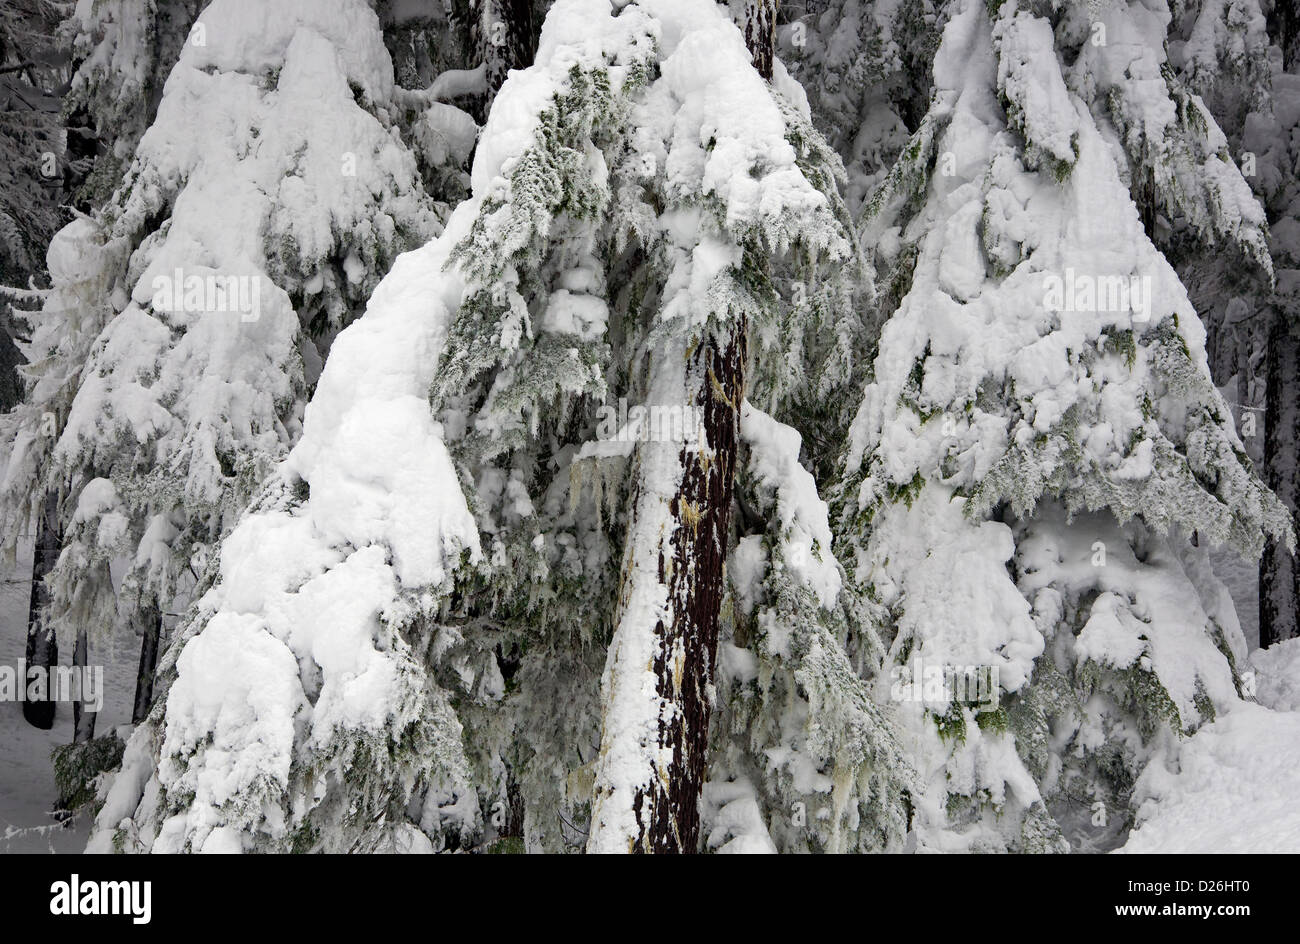 WASHINGTON - plâtrés de neige arbres dans la forêt près de Snoqualmie Pass dans le Okanogan-Wenatchee National Forest. Banque D'Images